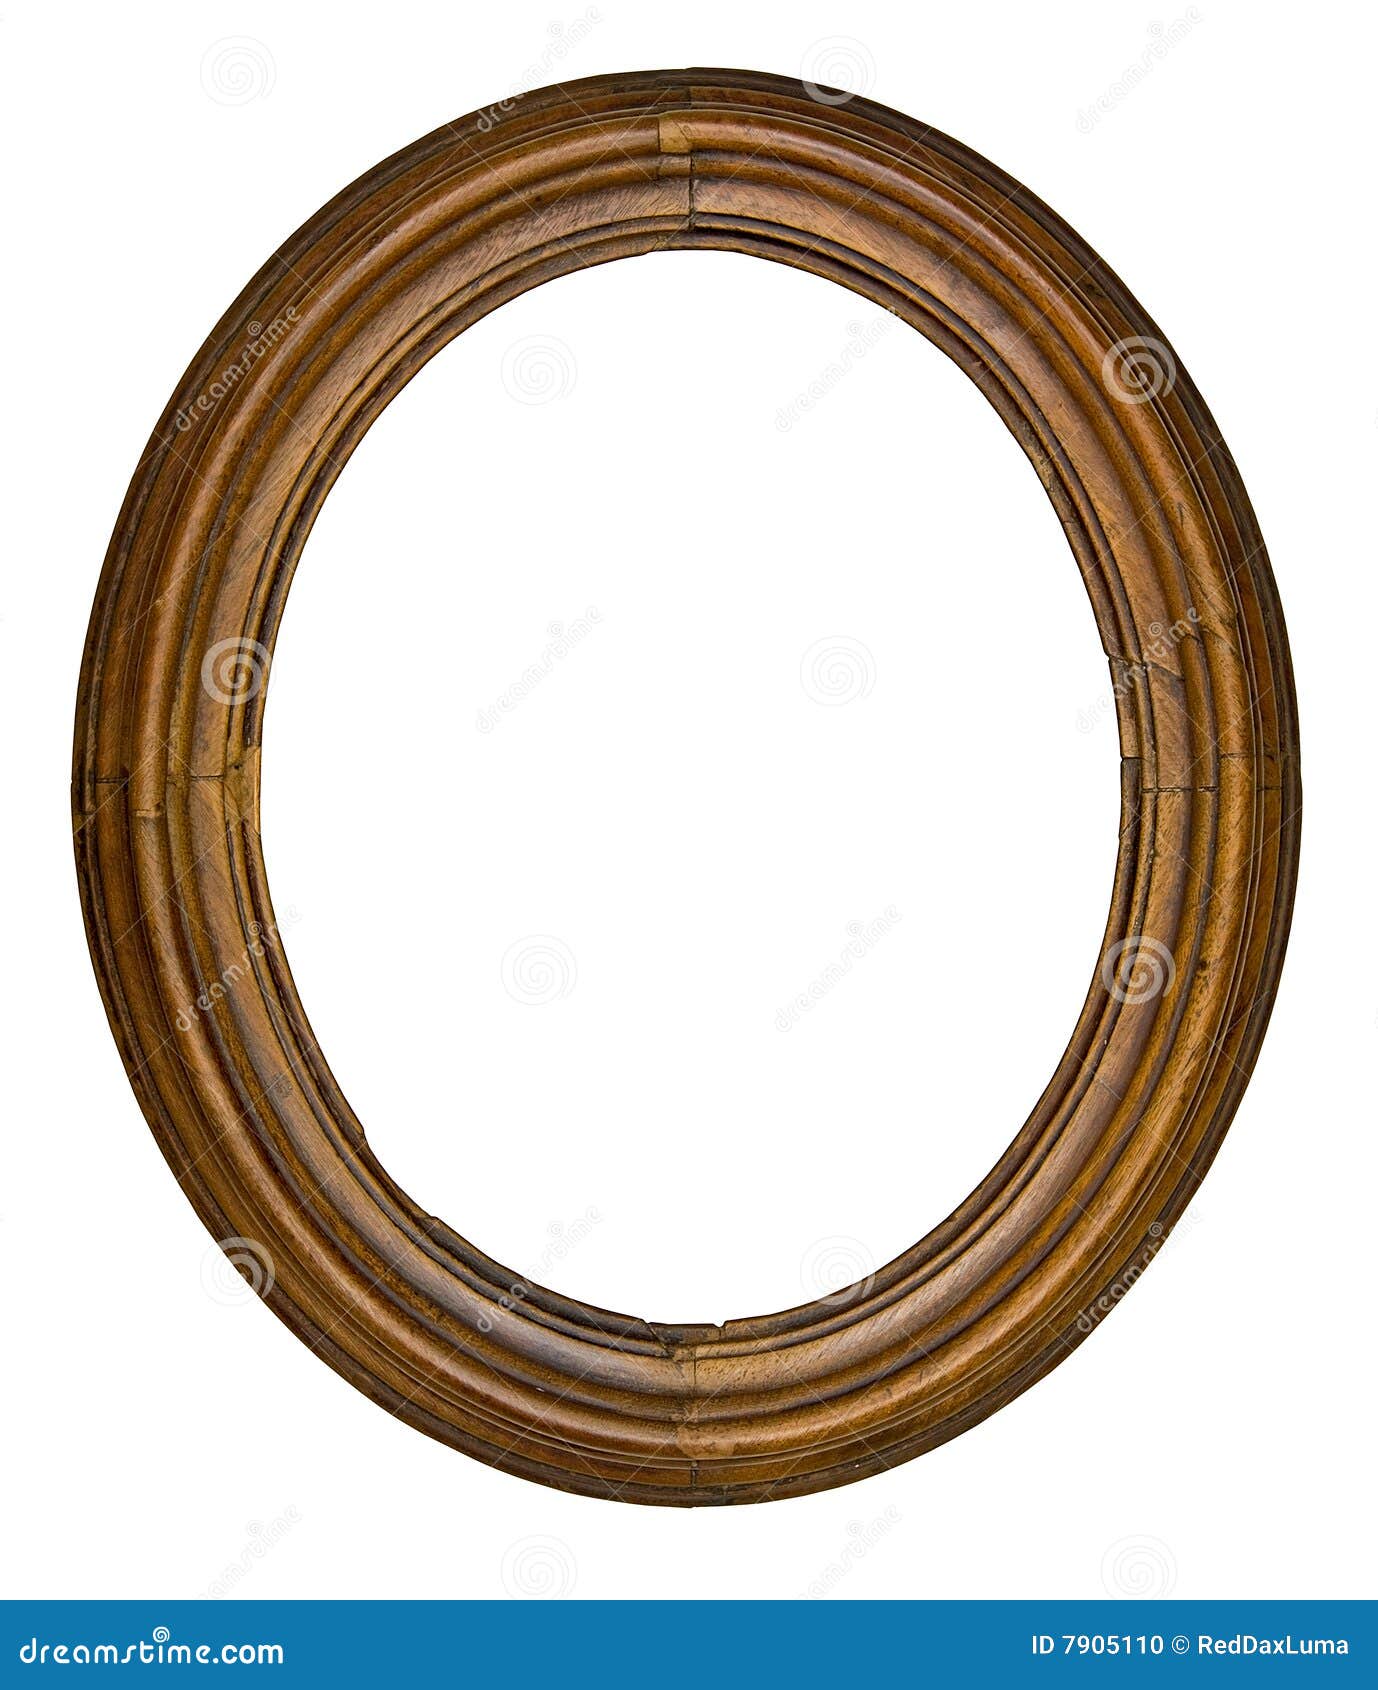 vintage oval frame